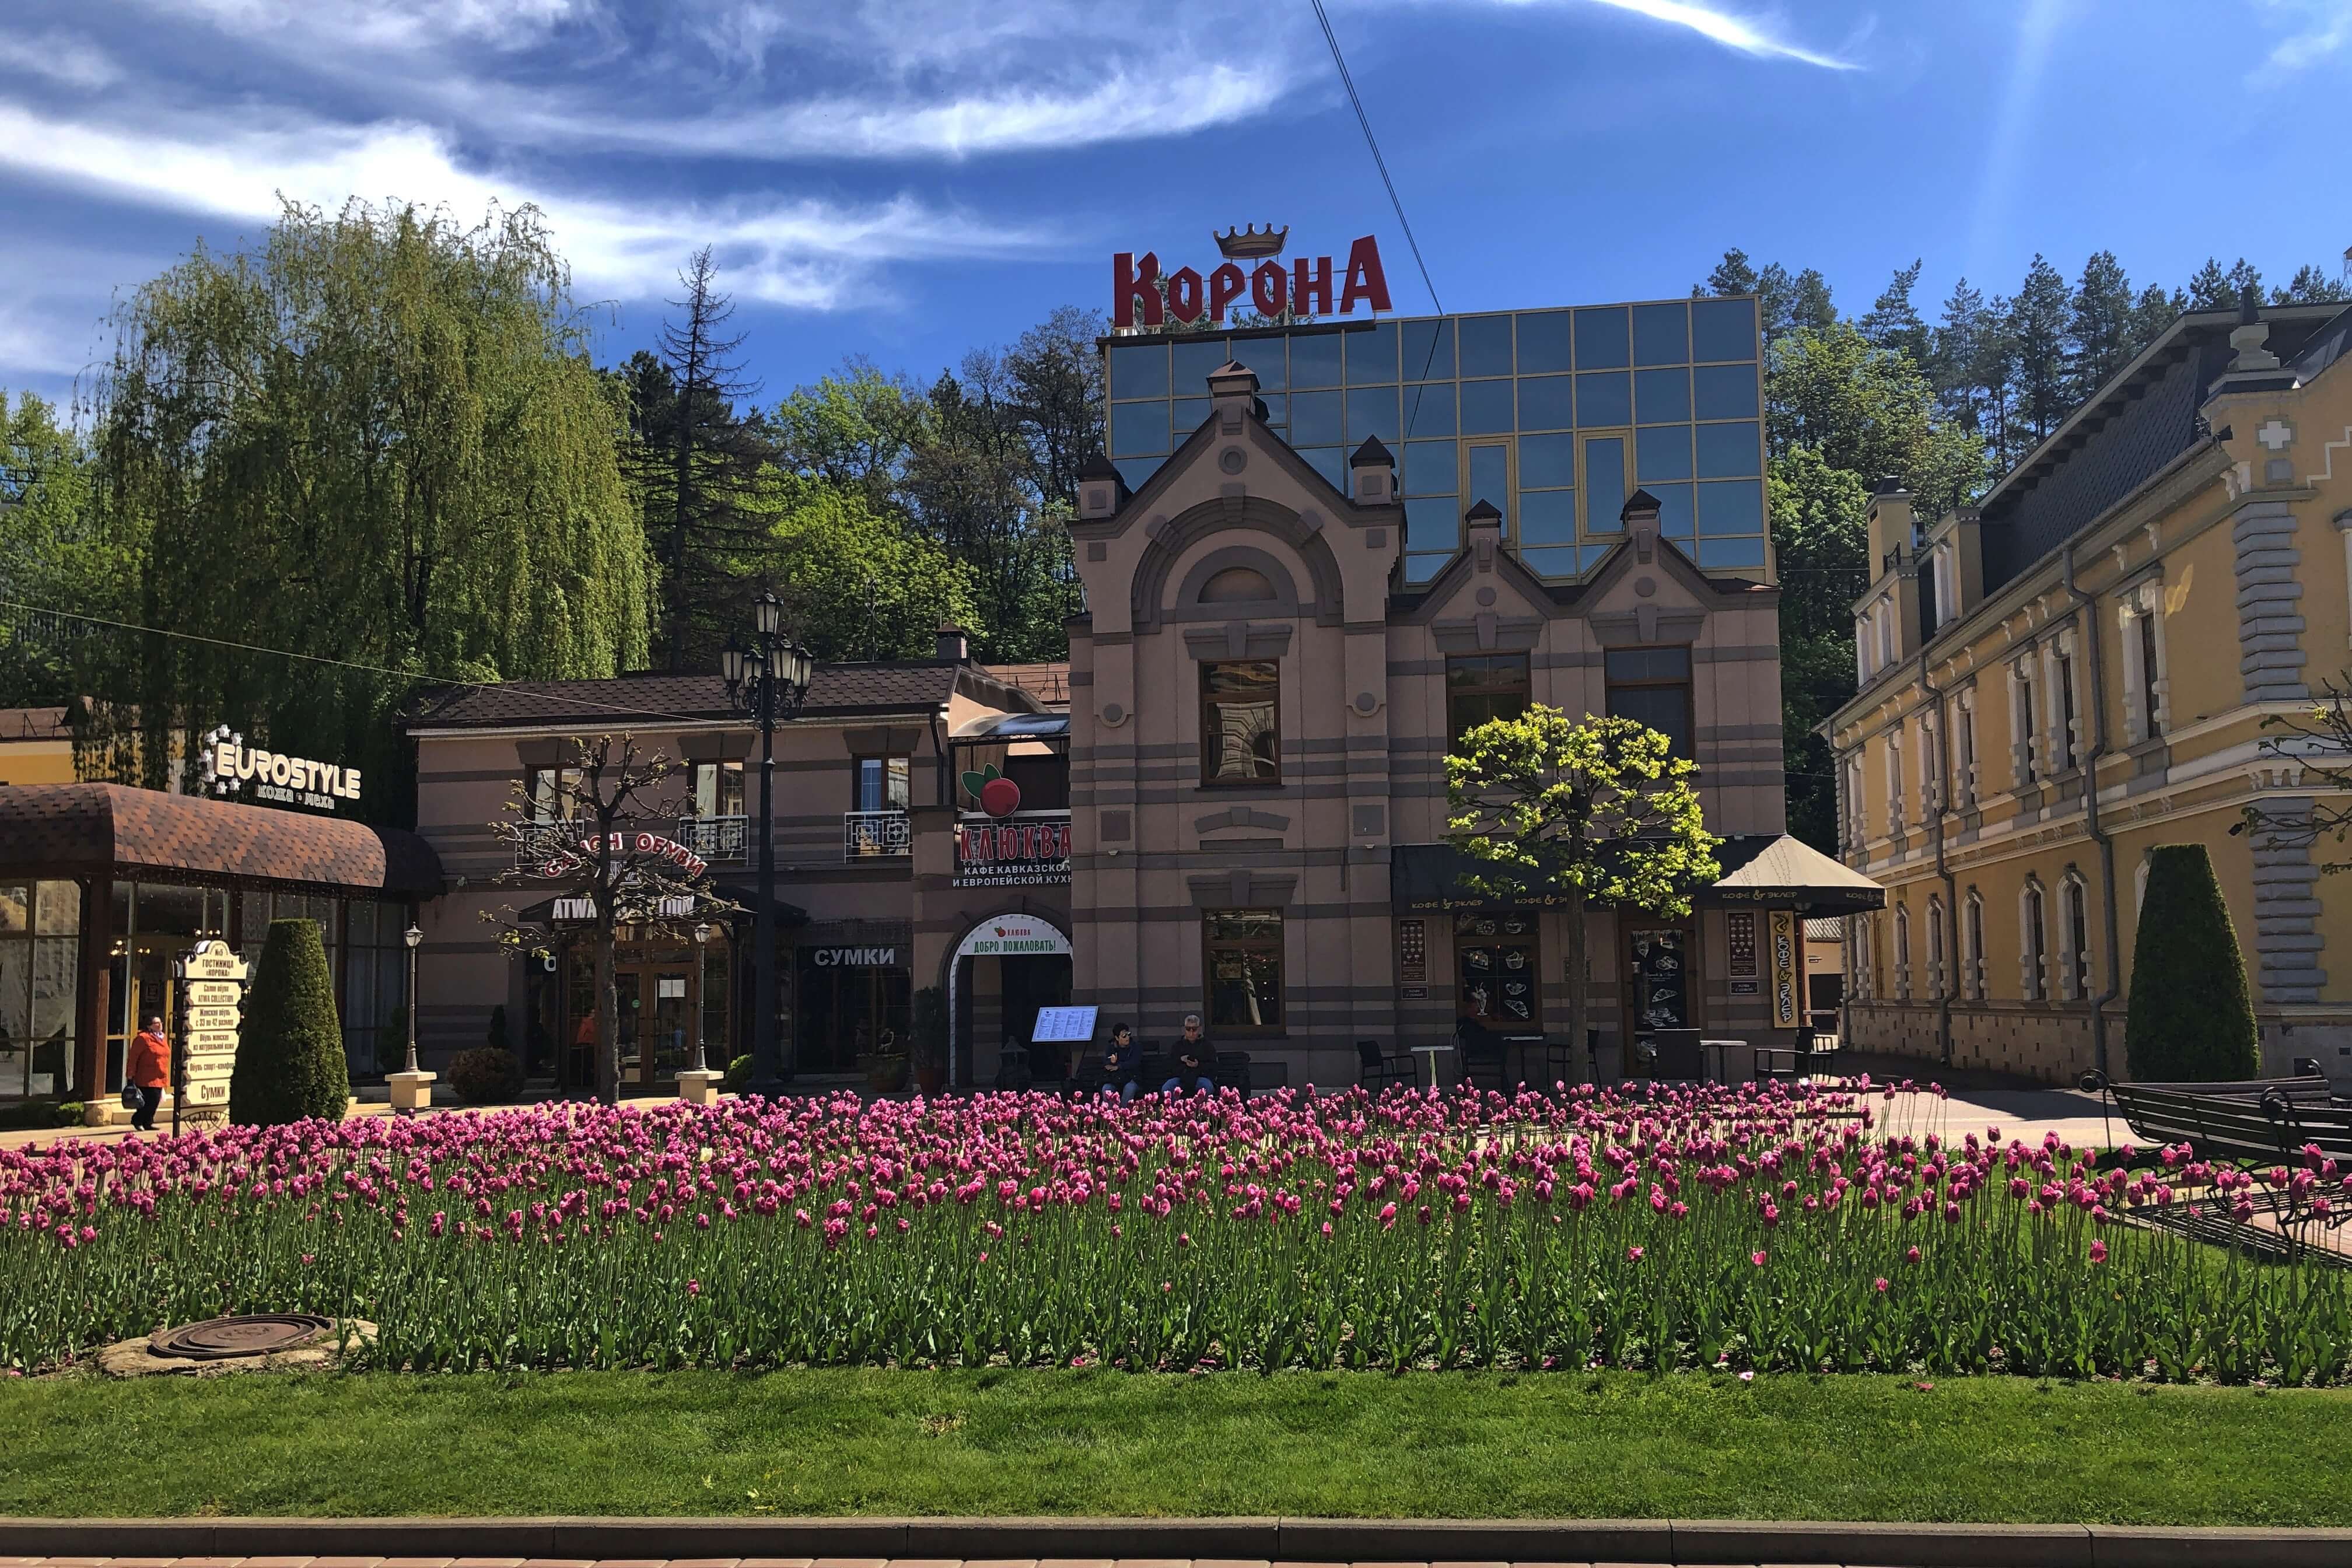 Перед зданием отеля высажены красивые бордово-розовые тюльпаны.